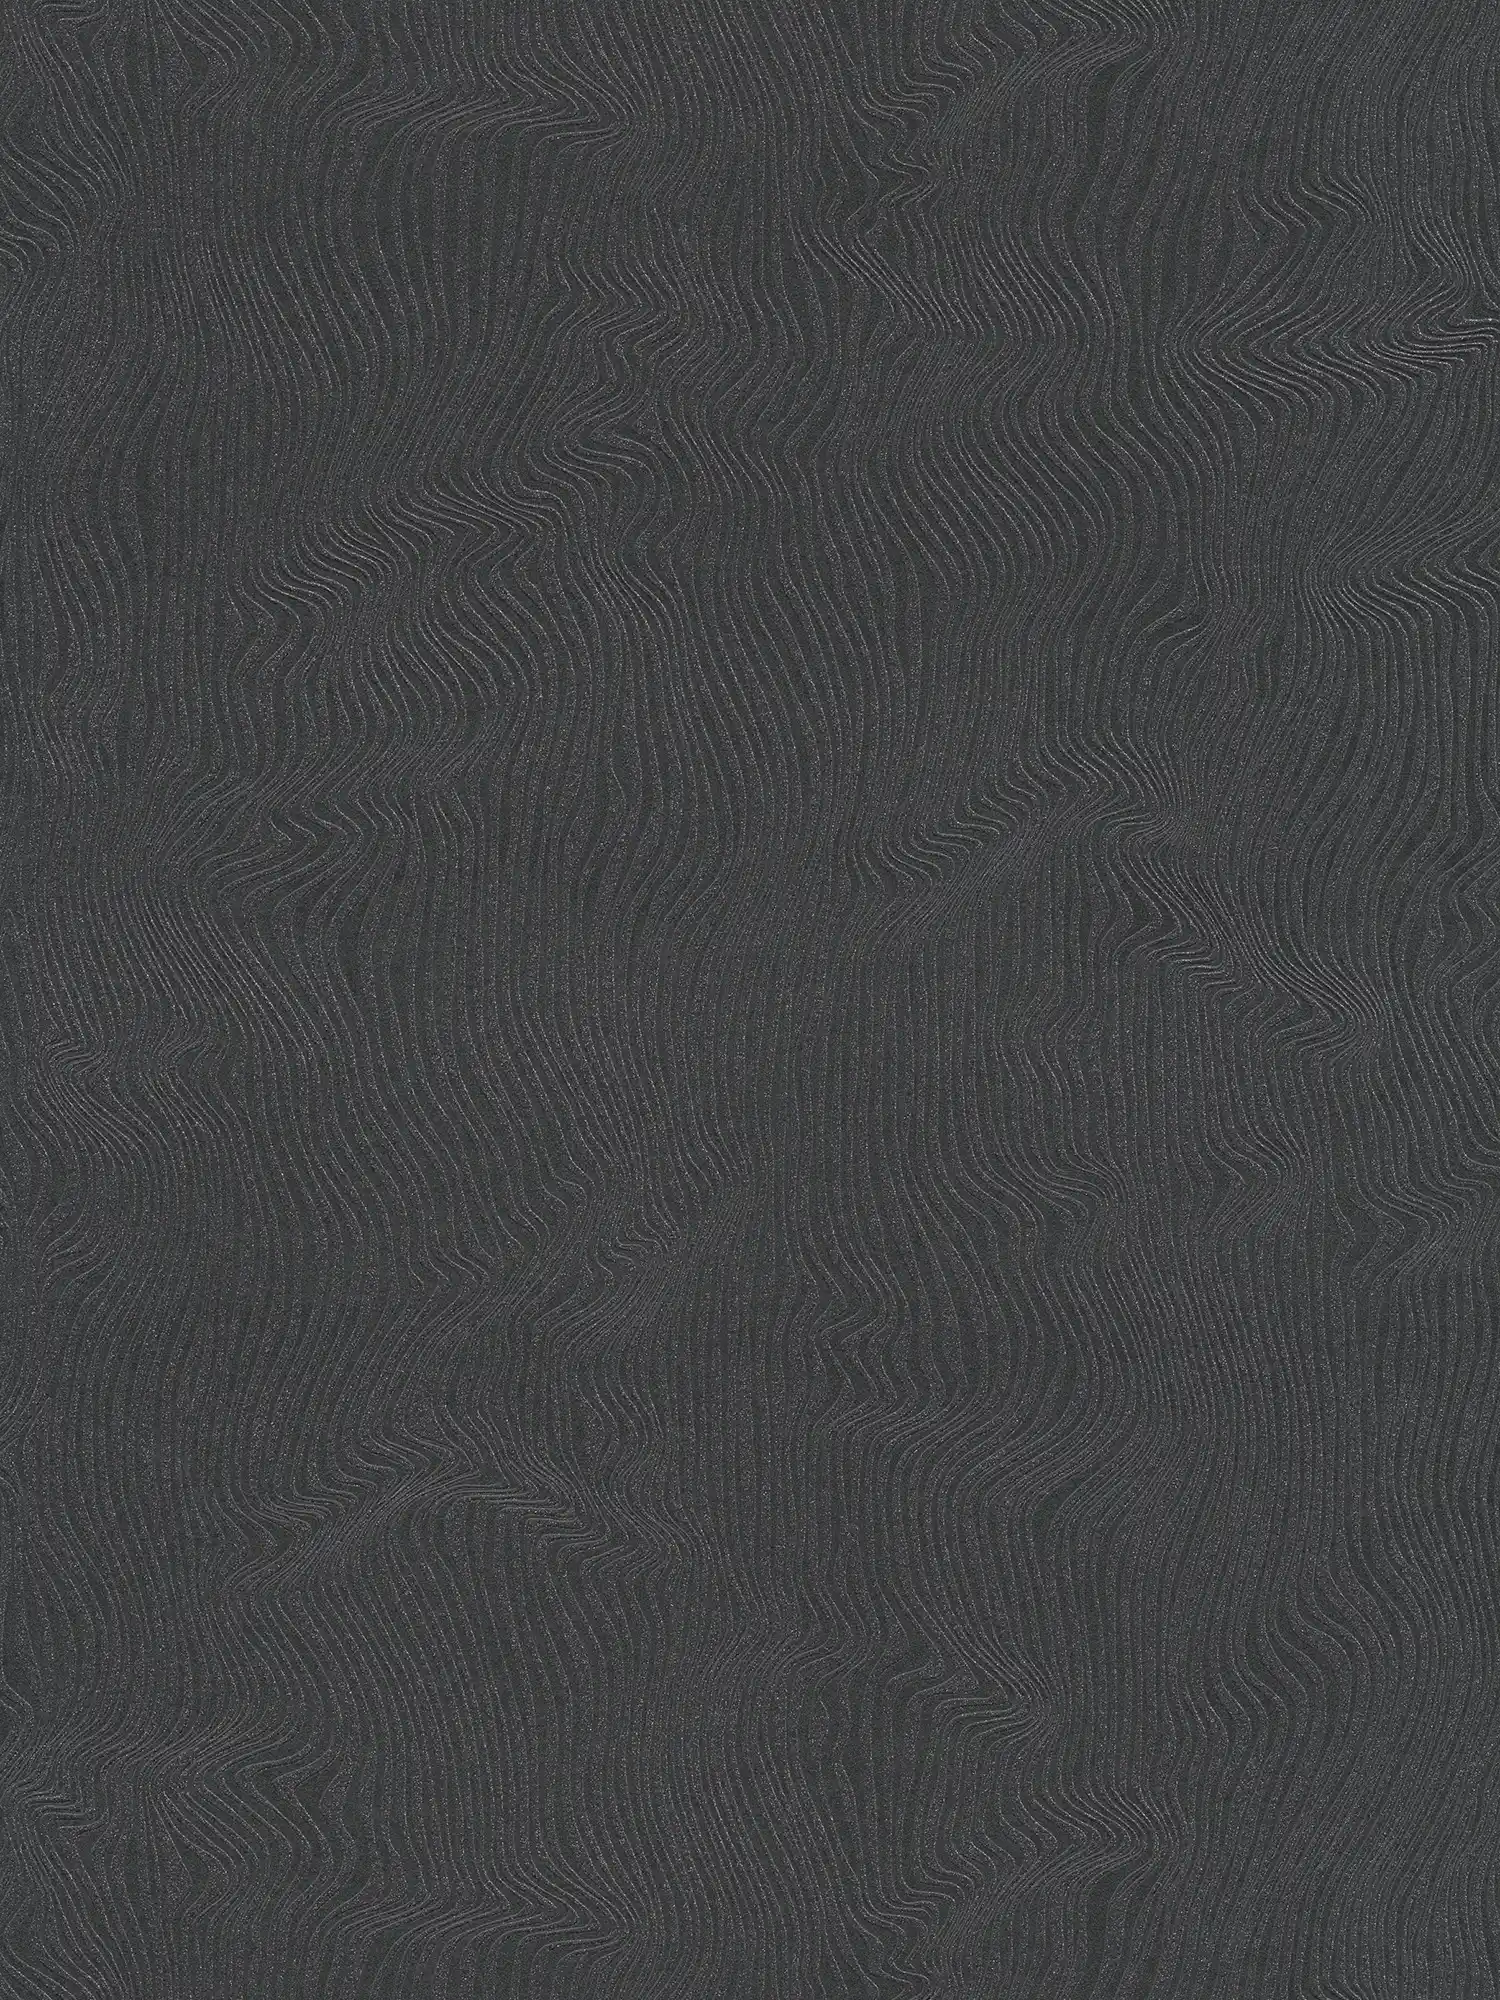 Effen behang met bewegend lijnenspel - zwart
